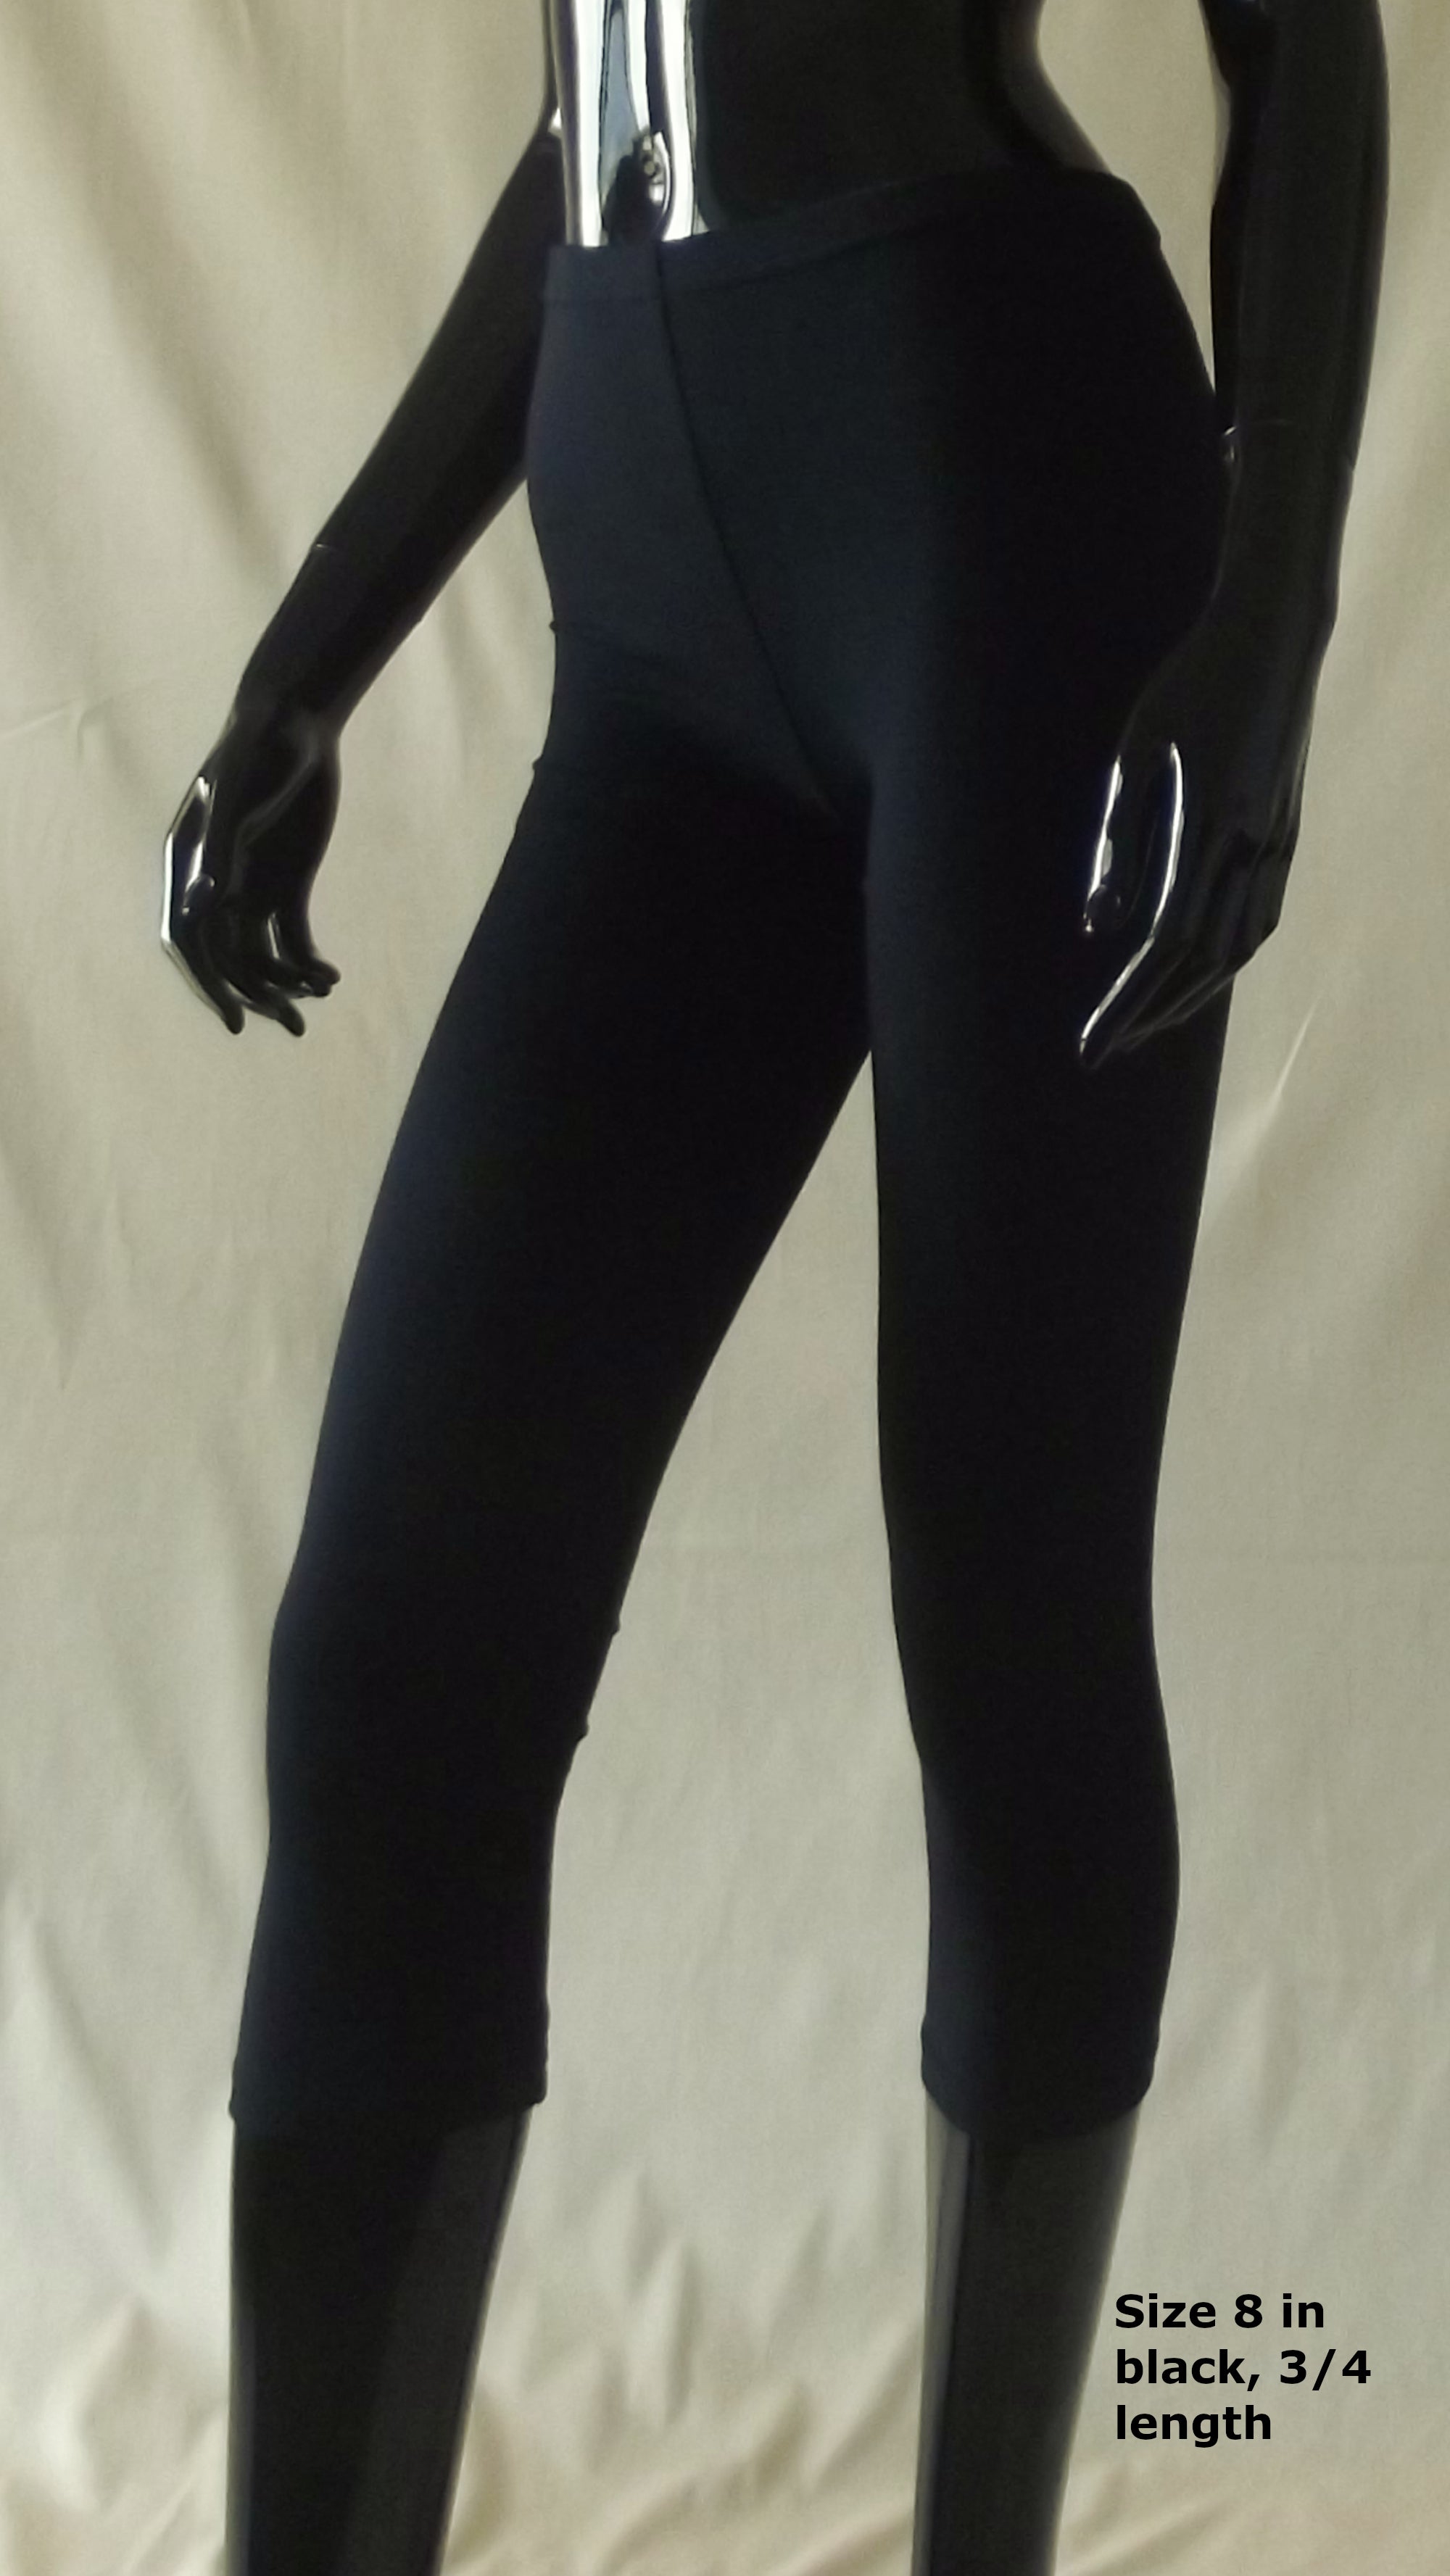 3/4 length women's black leggings